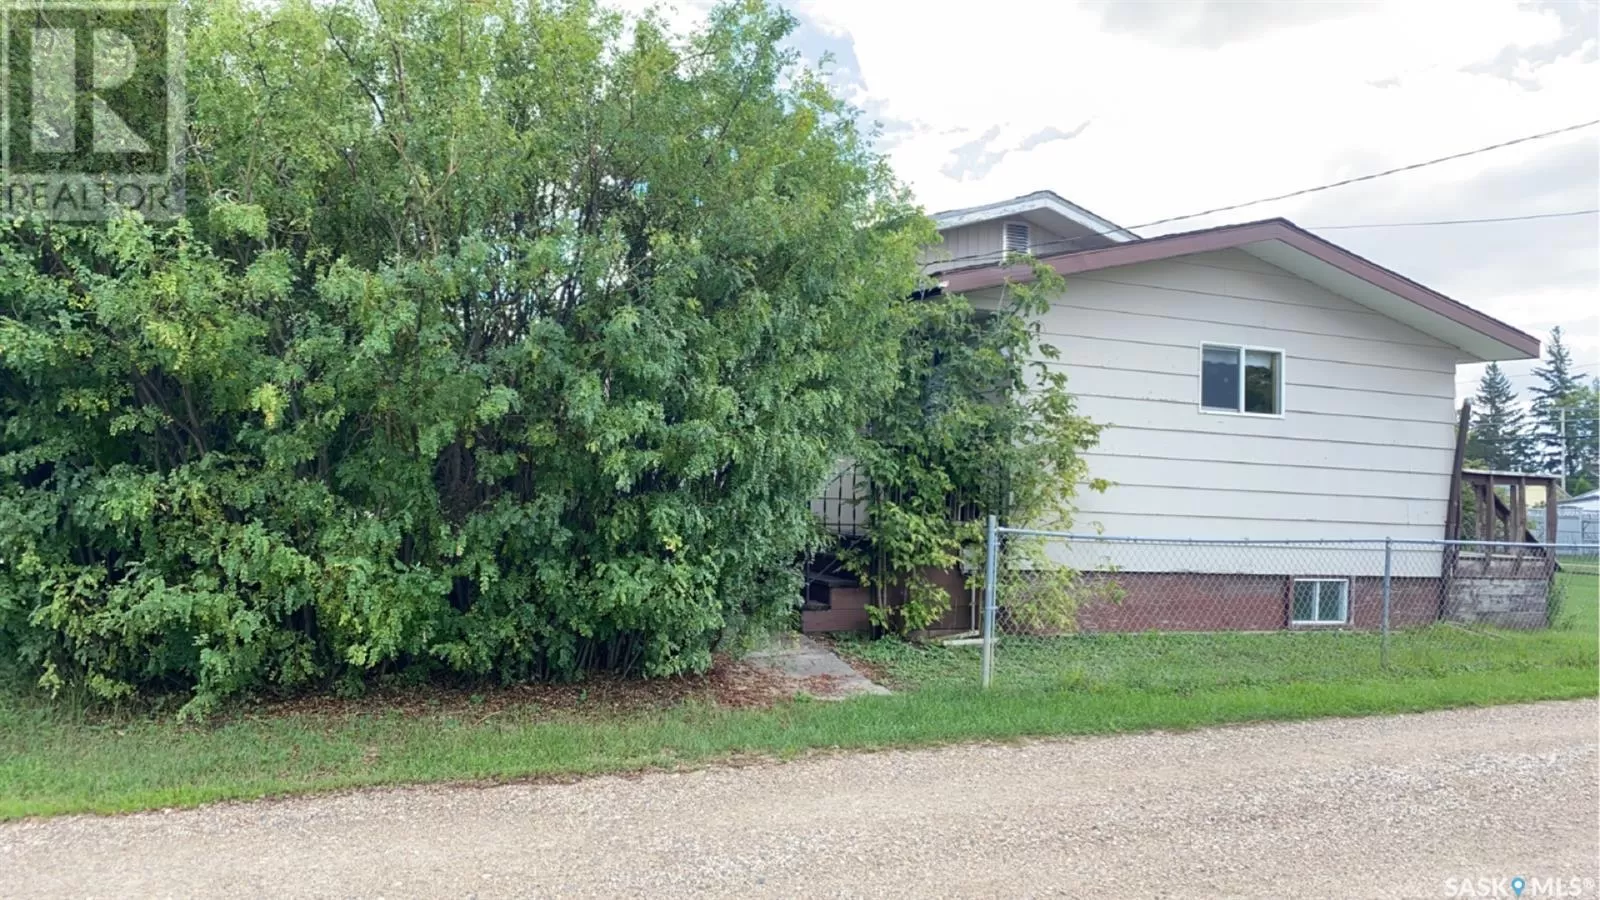 House for rent: 103 Brooks Avenue, Sturgis, Saskatchewan S0A 4A0